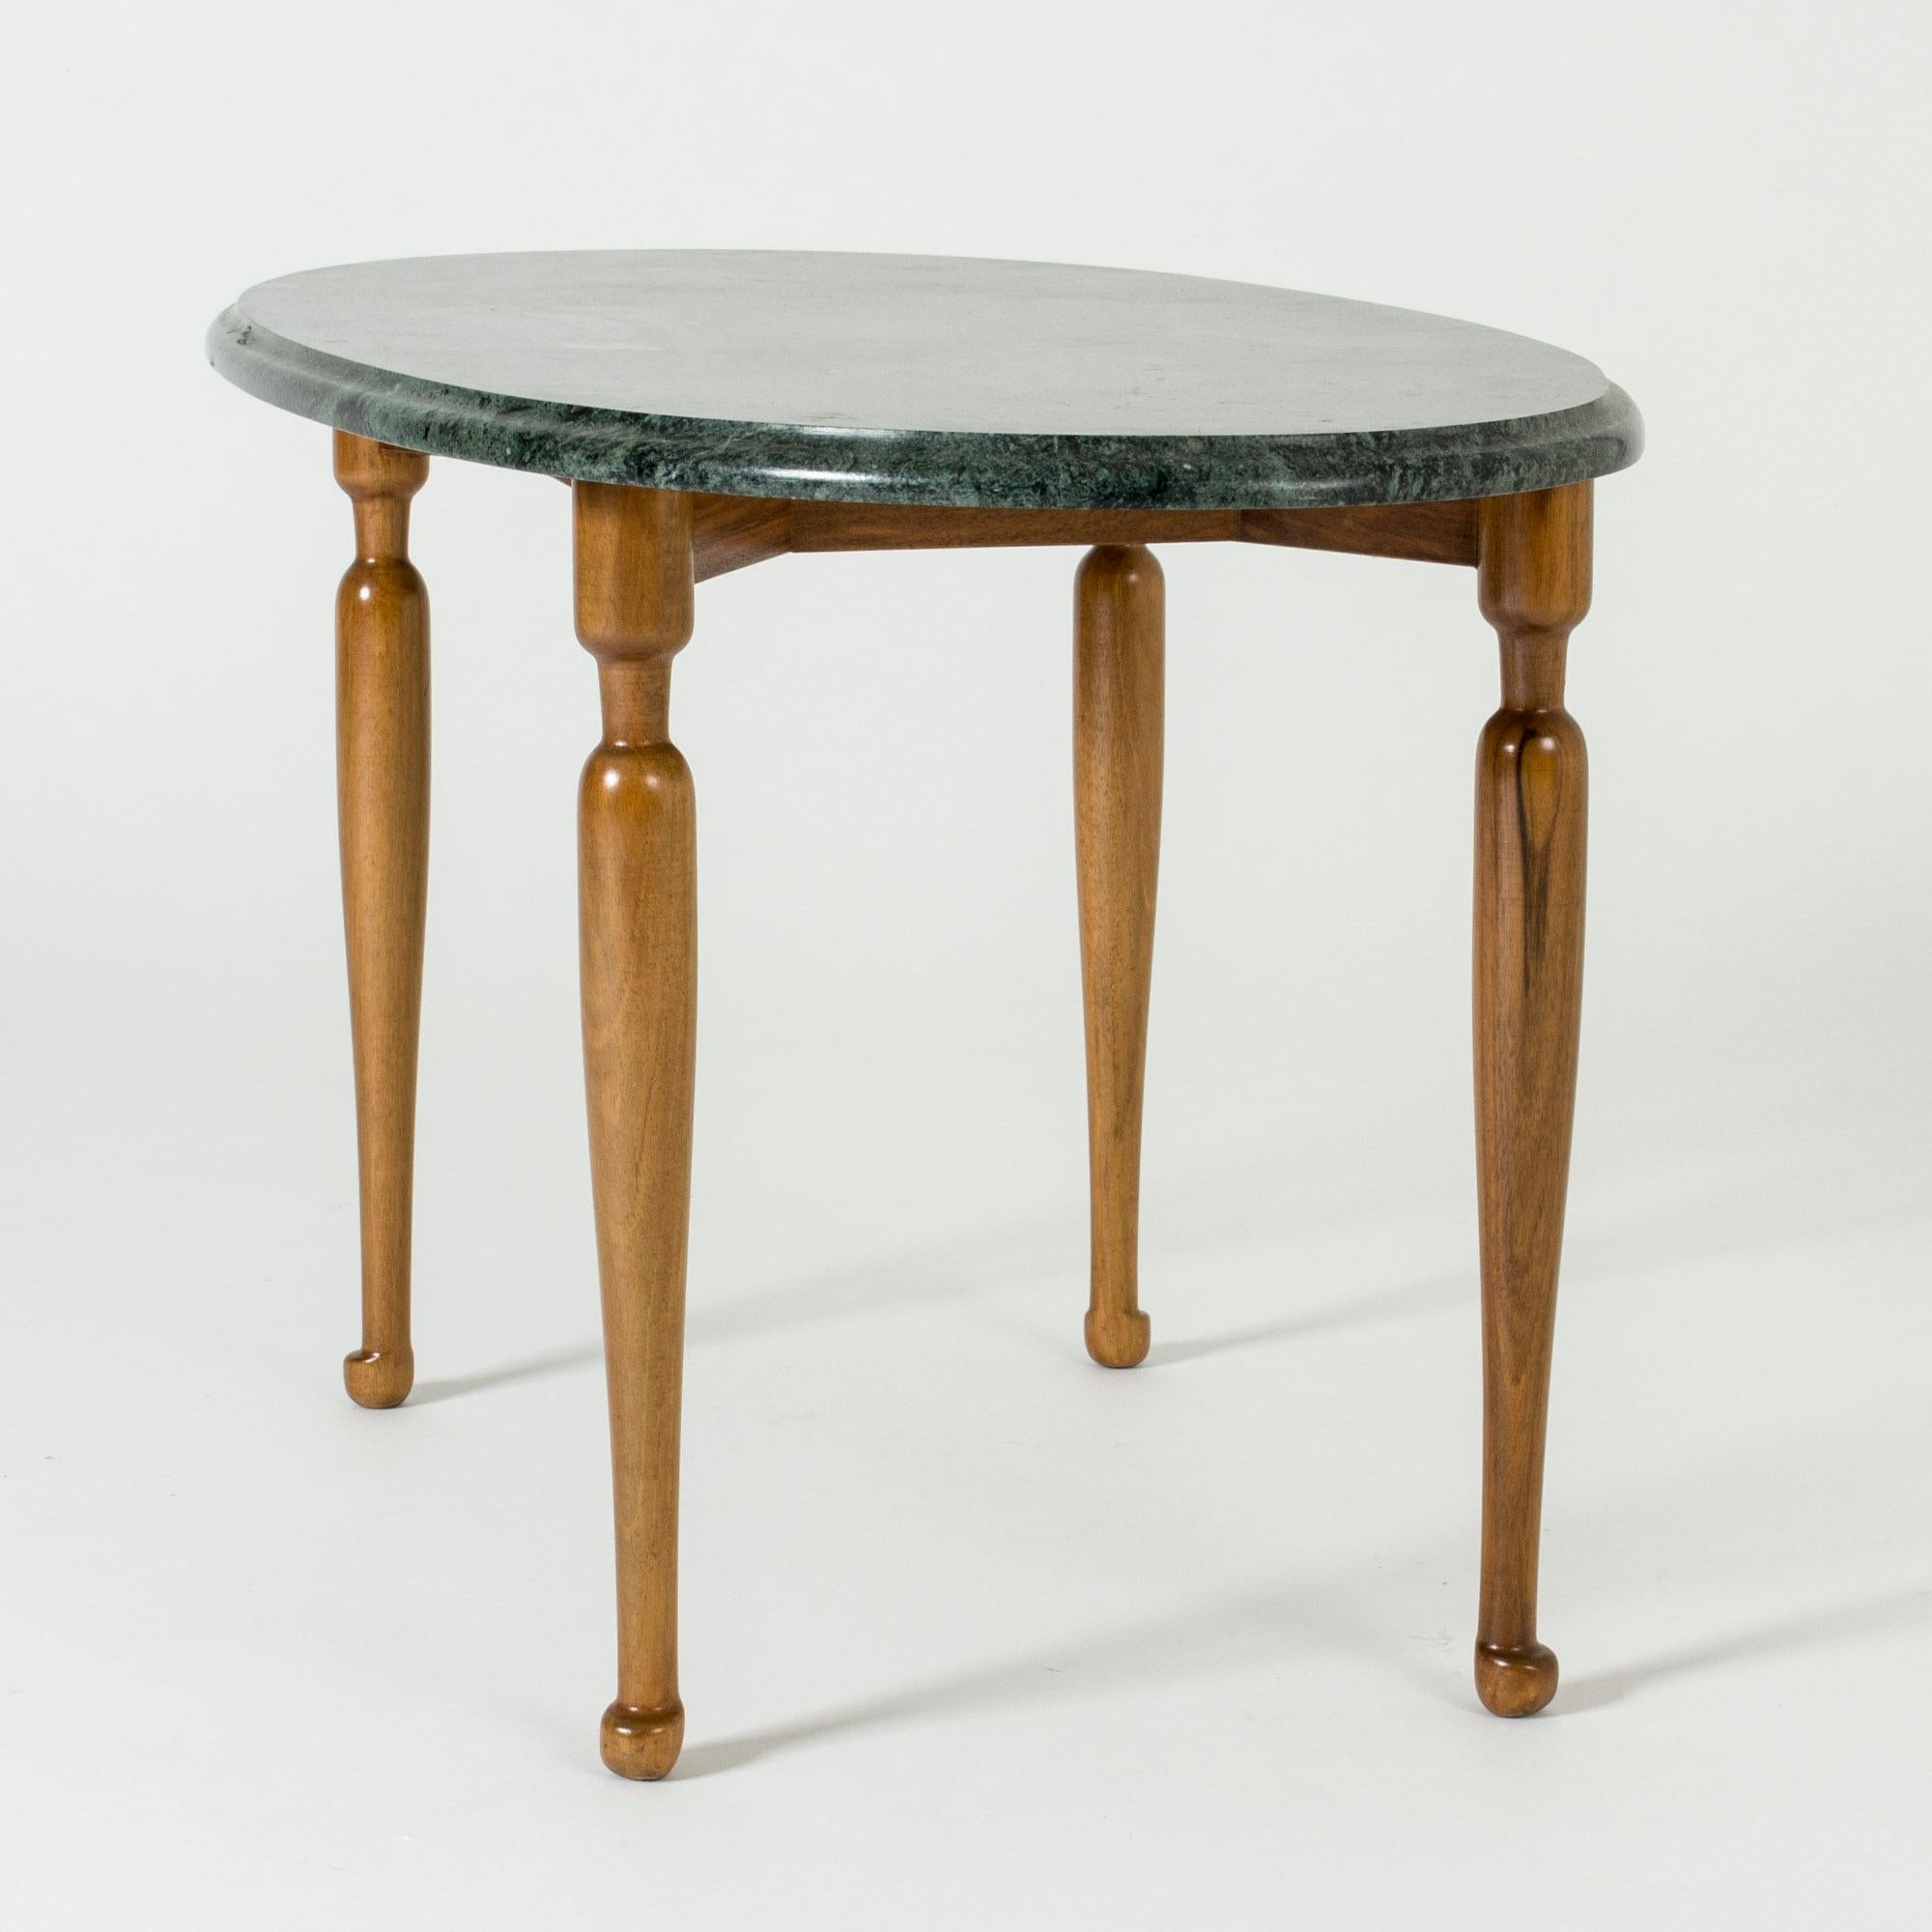 Magnifique table d'appoint de Josef Frank, avec un plateau ovale en marbre vert sur une base élancée en acajou. Marbre vert profond, belles jambes et pieds sculptés.